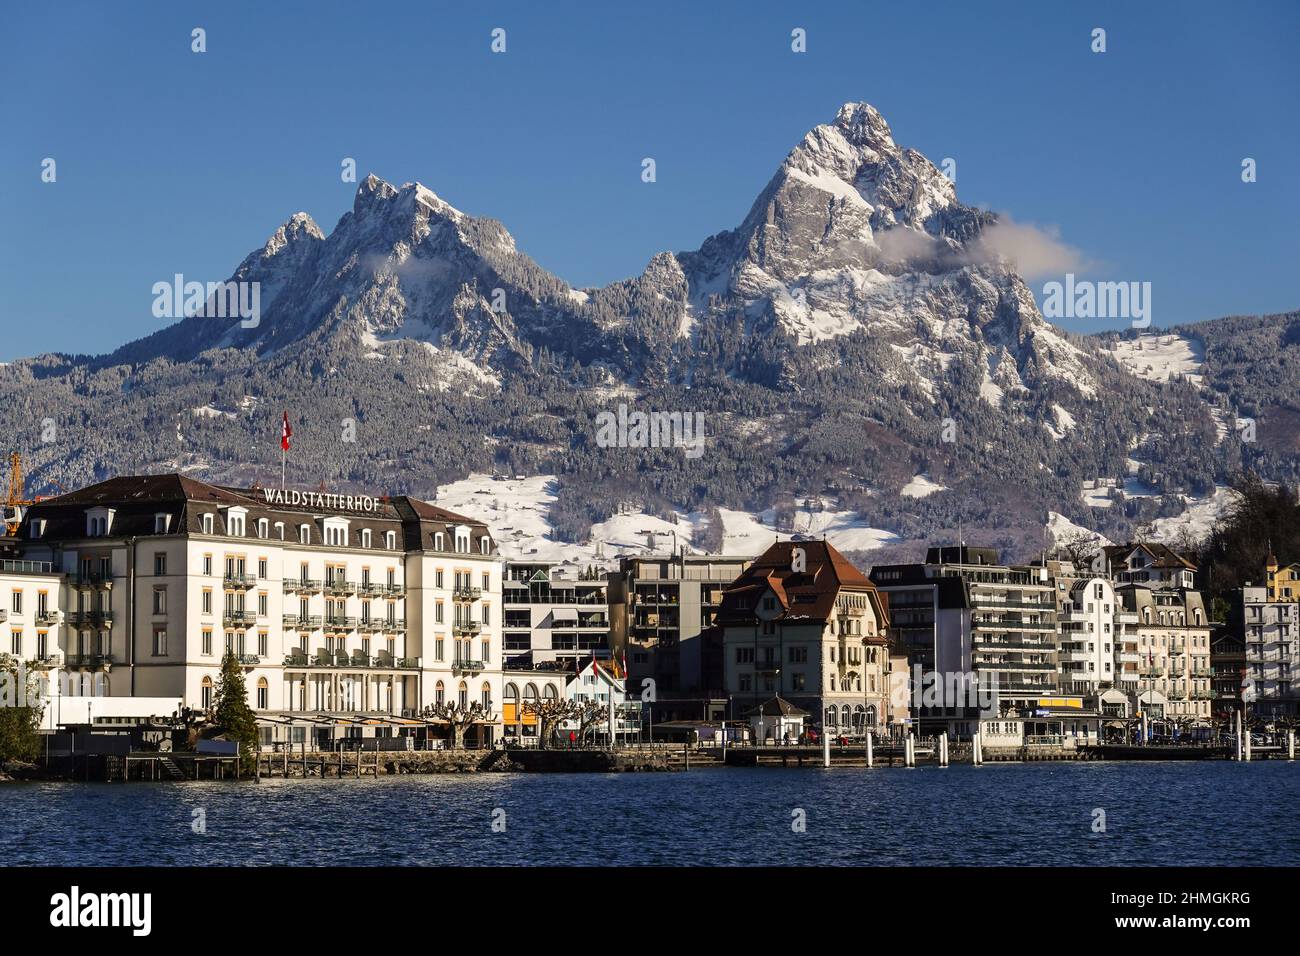 Brunnen, Suisse - janvier 11 2022 : quartier riverain de la ville de Brunnen dans le canton de Schwytz qui se trouve le long du lac de Lucerne et en dessous du spectaculaire Banque D'Images